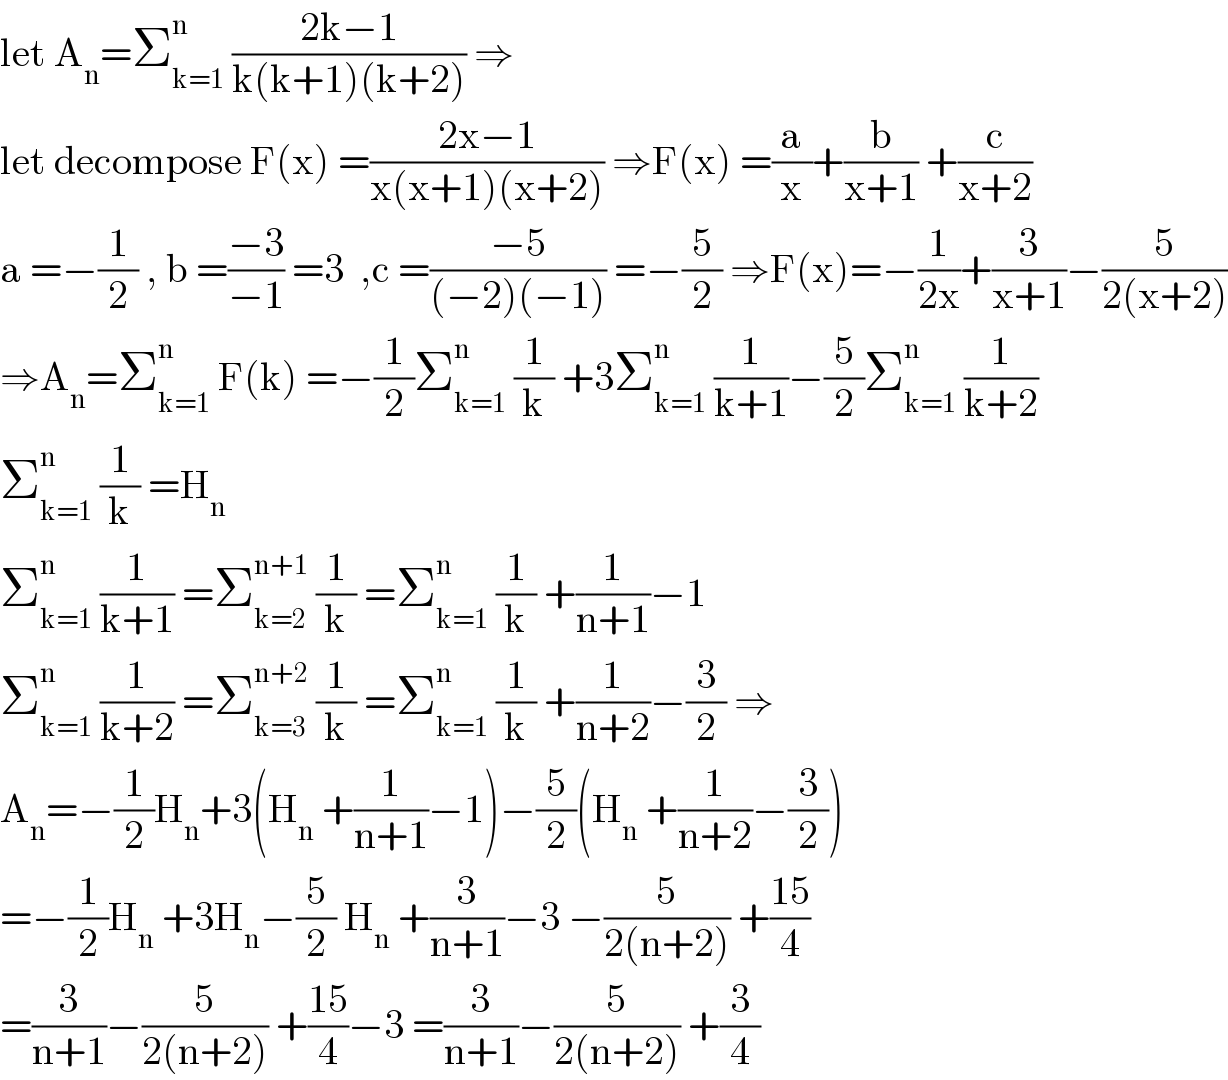 let A_n =Σ_(k=1) ^n  ((2k−1)/(k(k+1)(k+2))) ⇒  let decompose F(x) =((2x−1)/(x(x+1)(x+2))) ⇒F(x) =(a/x)+(b/(x+1)) +(c/(x+2))  a =−(1/2) , b =((−3)/(−1)) =3  ,c =((−5)/((−2)(−1))) =−(5/2) ⇒F(x)=−(1/(2x))+(3/(x+1))−(5/(2(x+2)))  ⇒A_n =Σ_(k=1) ^n  F(k) =−(1/2)Σ_(k=1) ^n  (1/k) +3Σ_(k=1) ^n  (1/(k+1))−(5/2)Σ_(k=1) ^n  (1/(k+2))  Σ_(k=1) ^n  (1/k) =H_n   Σ_(k=1) ^n  (1/(k+1)) =Σ_(k=2) ^(n+1)  (1/k) =Σ_(k=1) ^n  (1/k) +(1/(n+1))−1  Σ_(k=1) ^n  (1/(k+2)) =Σ_(k=3) ^(n+2)  (1/k) =Σ_(k=1) ^n  (1/k) +(1/(n+2))−(3/2) ⇒  A_n =−(1/2)H_n +3(H_n  +(1/(n+1))−1)−(5/2)(H_n  +(1/(n+2))−(3/2))  =−(1/2)H_n  +3H_n −(5/2) H_n  +(3/(n+1))−3 −(5/(2(n+2))) +((15)/4)  =(3/(n+1))−(5/(2(n+2))) +((15)/4)−3 =(3/(n+1))−(5/(2(n+2))) +(3/4)  